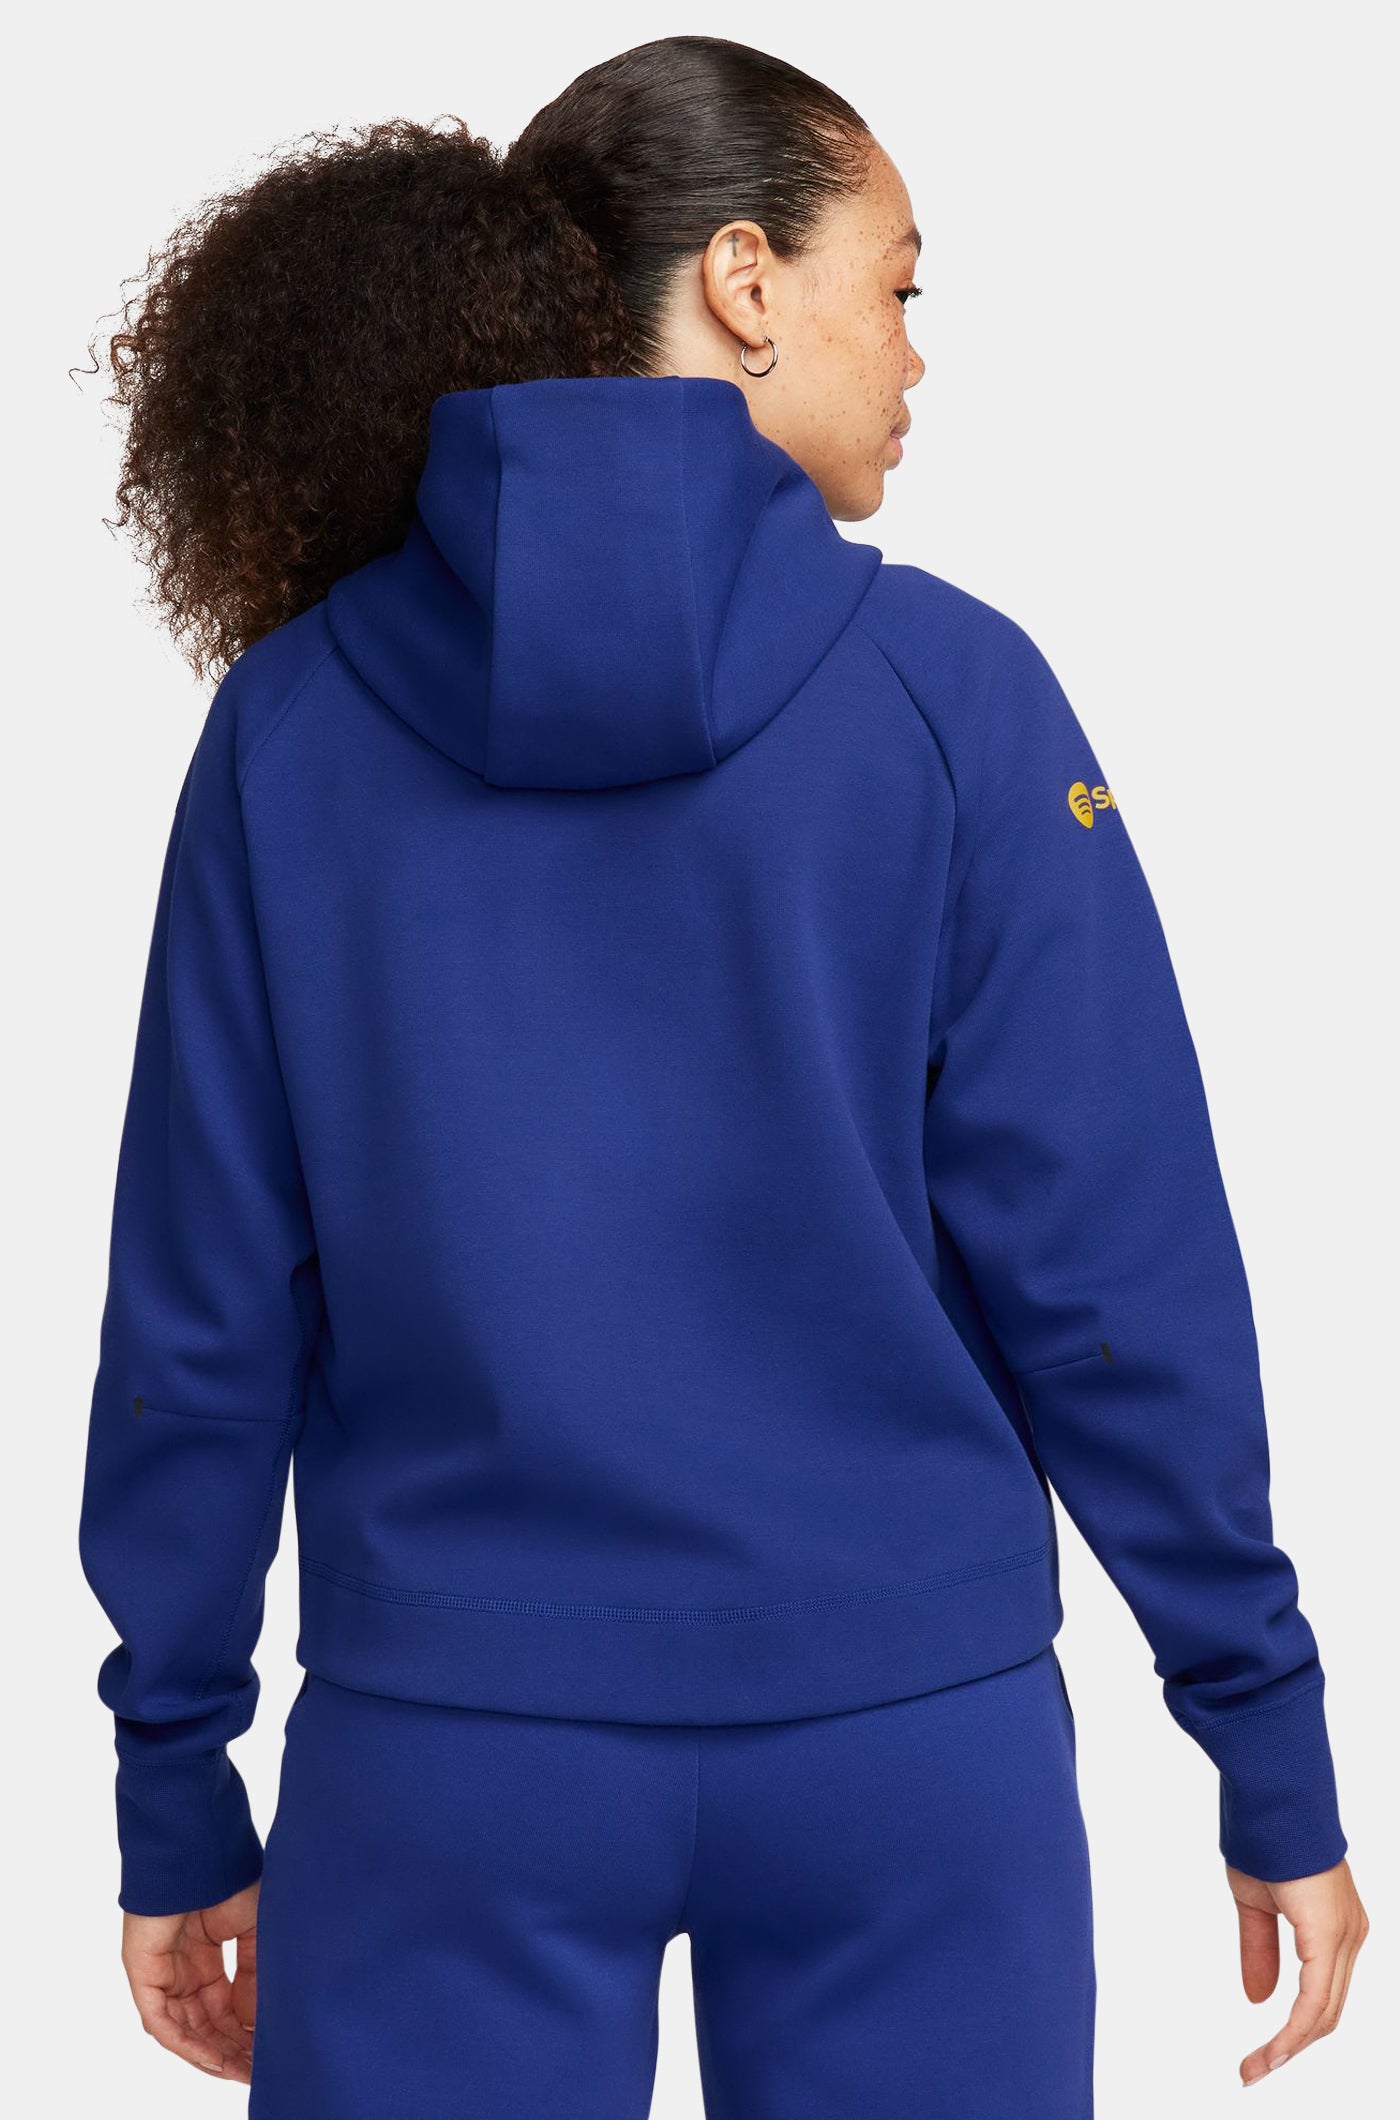 Tech jacket blue royal Barça Nike - Women's